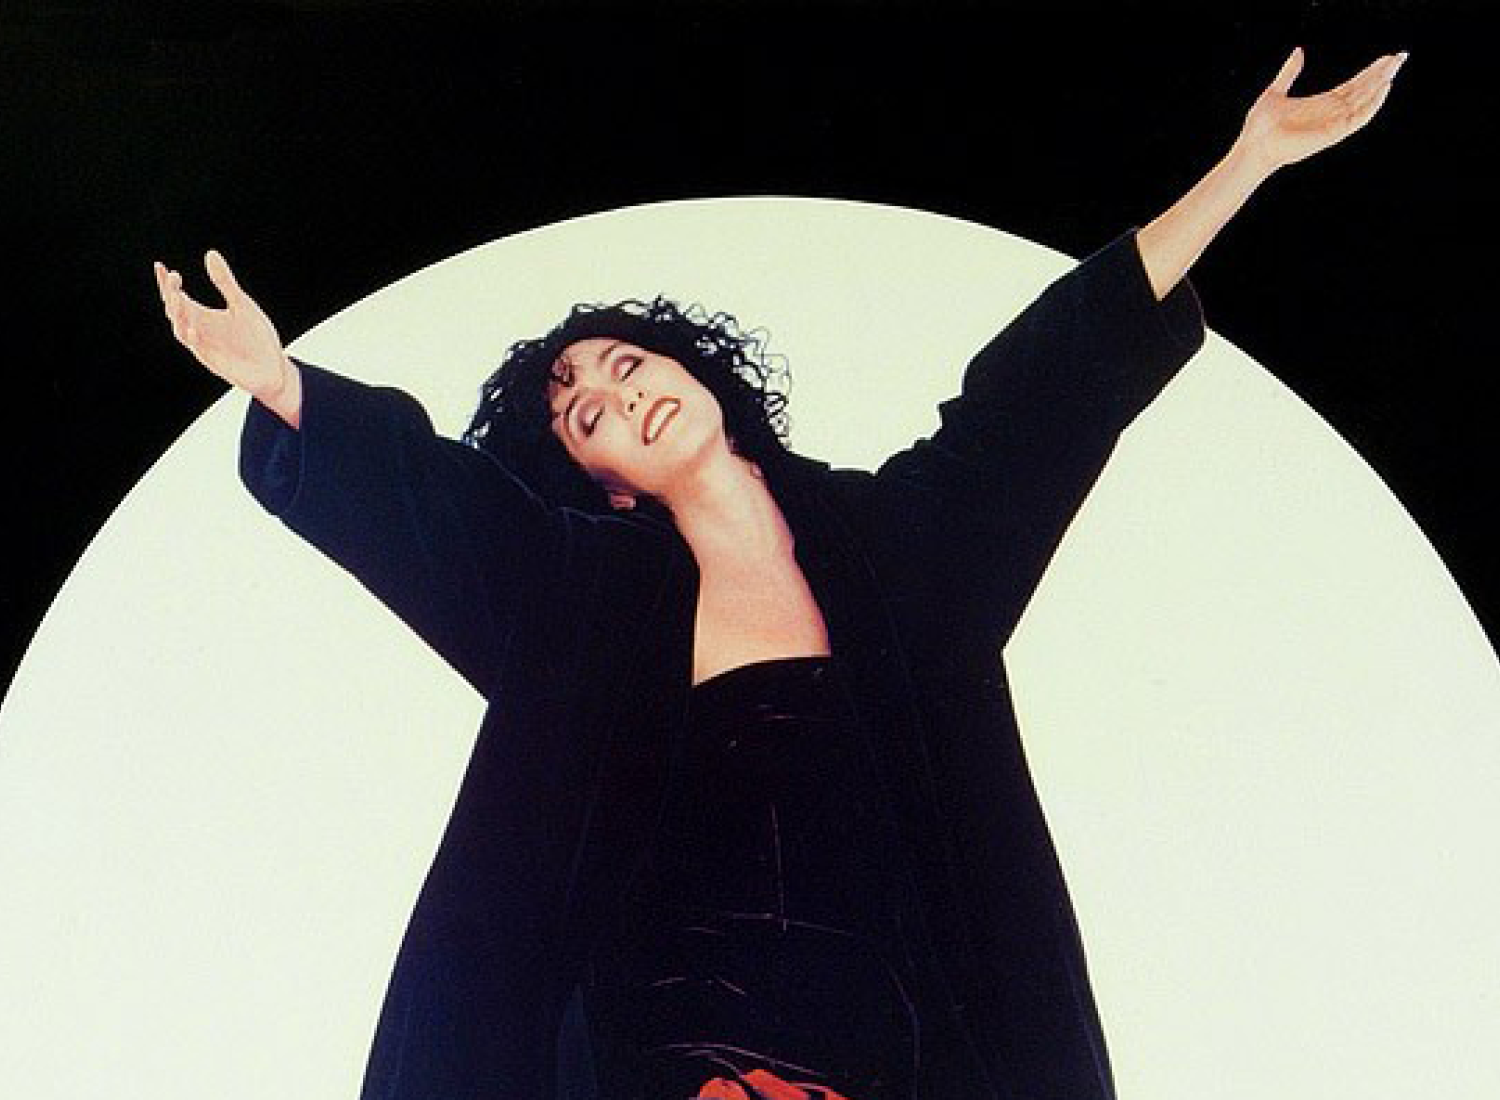 Cher ergue os braços no ar na frente de uma lua cheia.